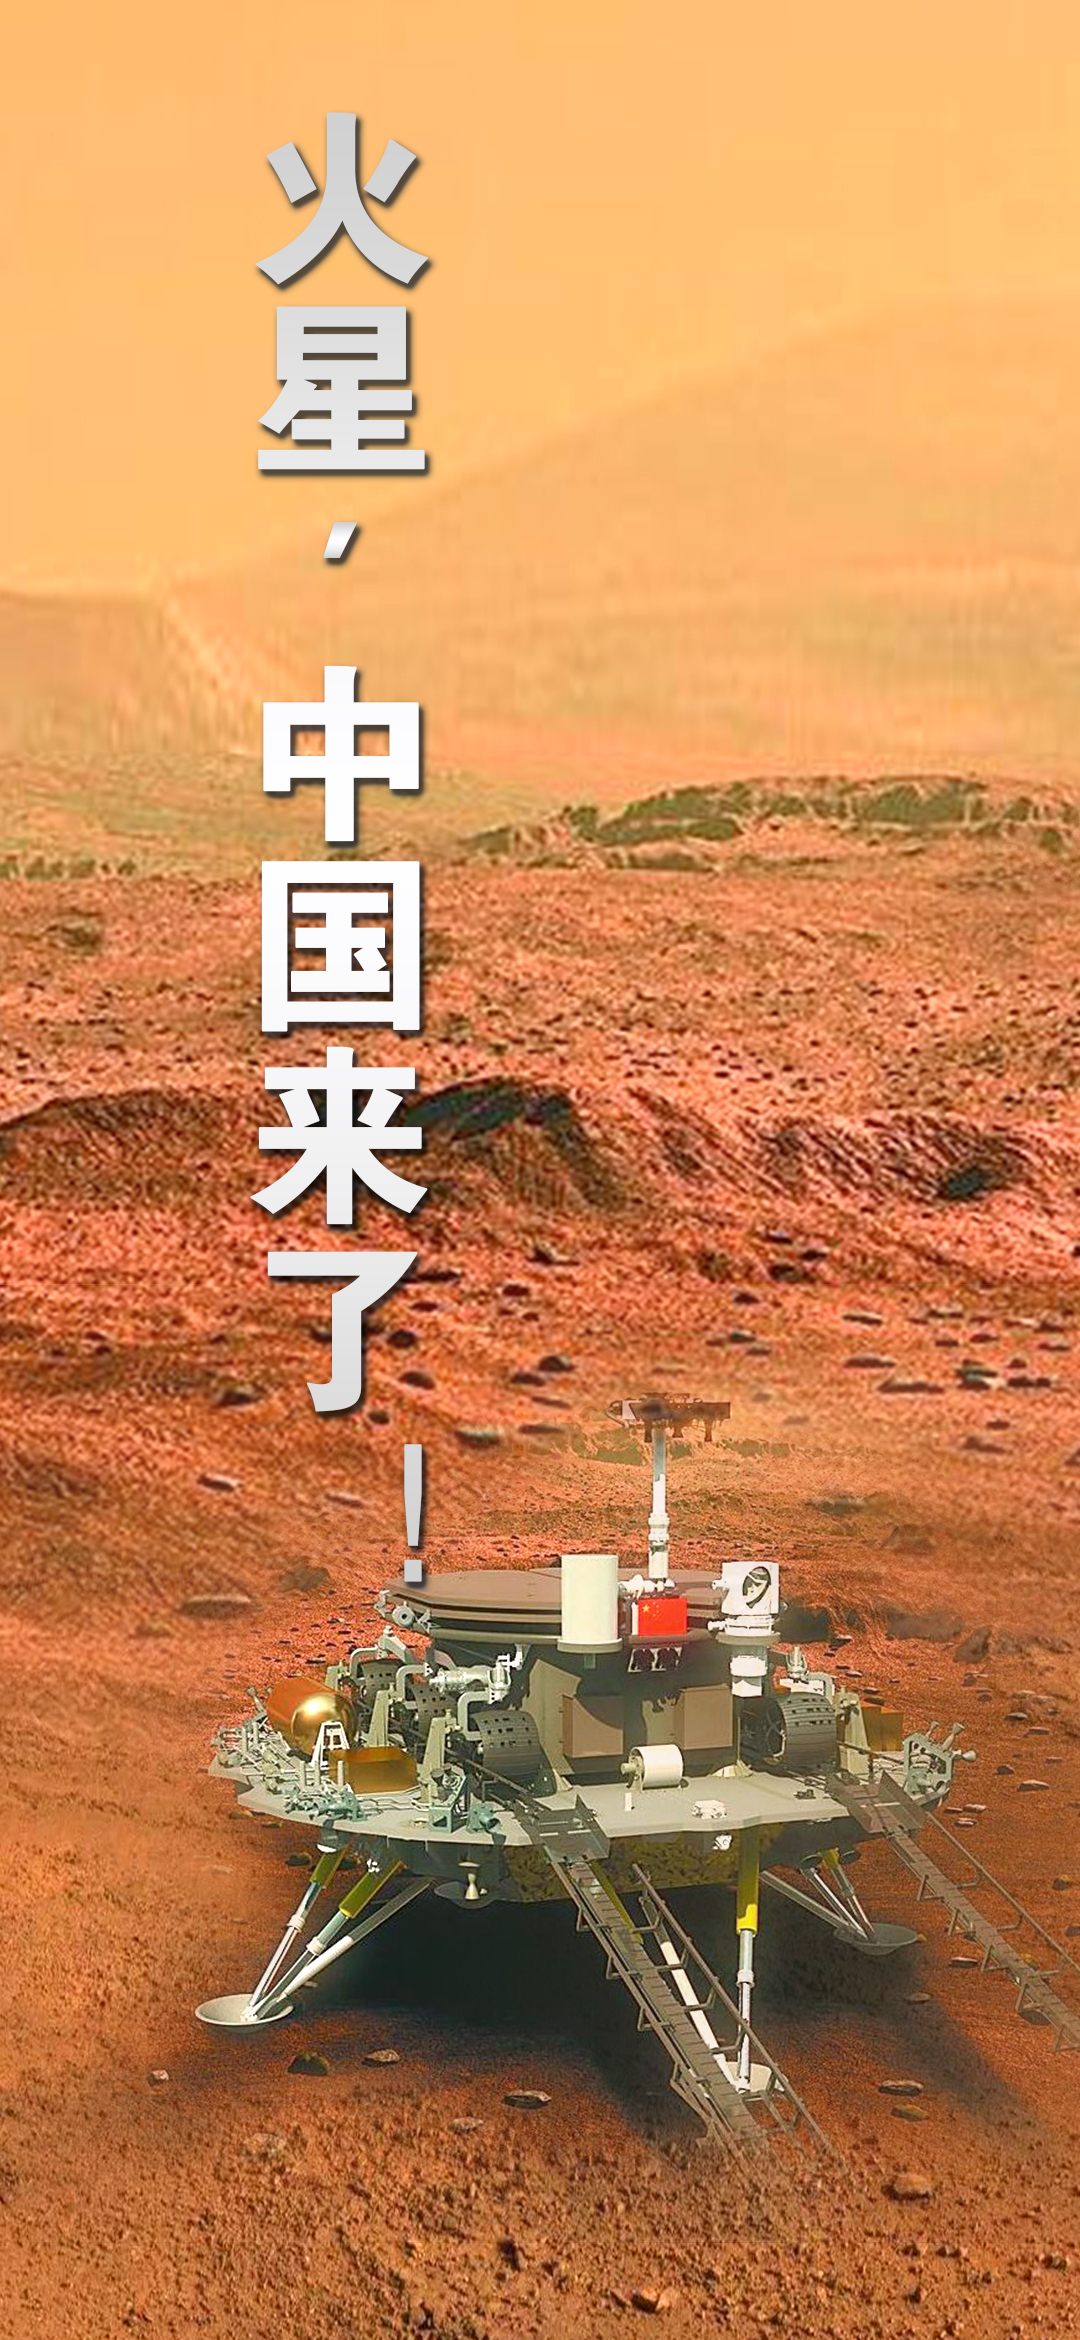 中国首次火星探测任务取得圆满成功